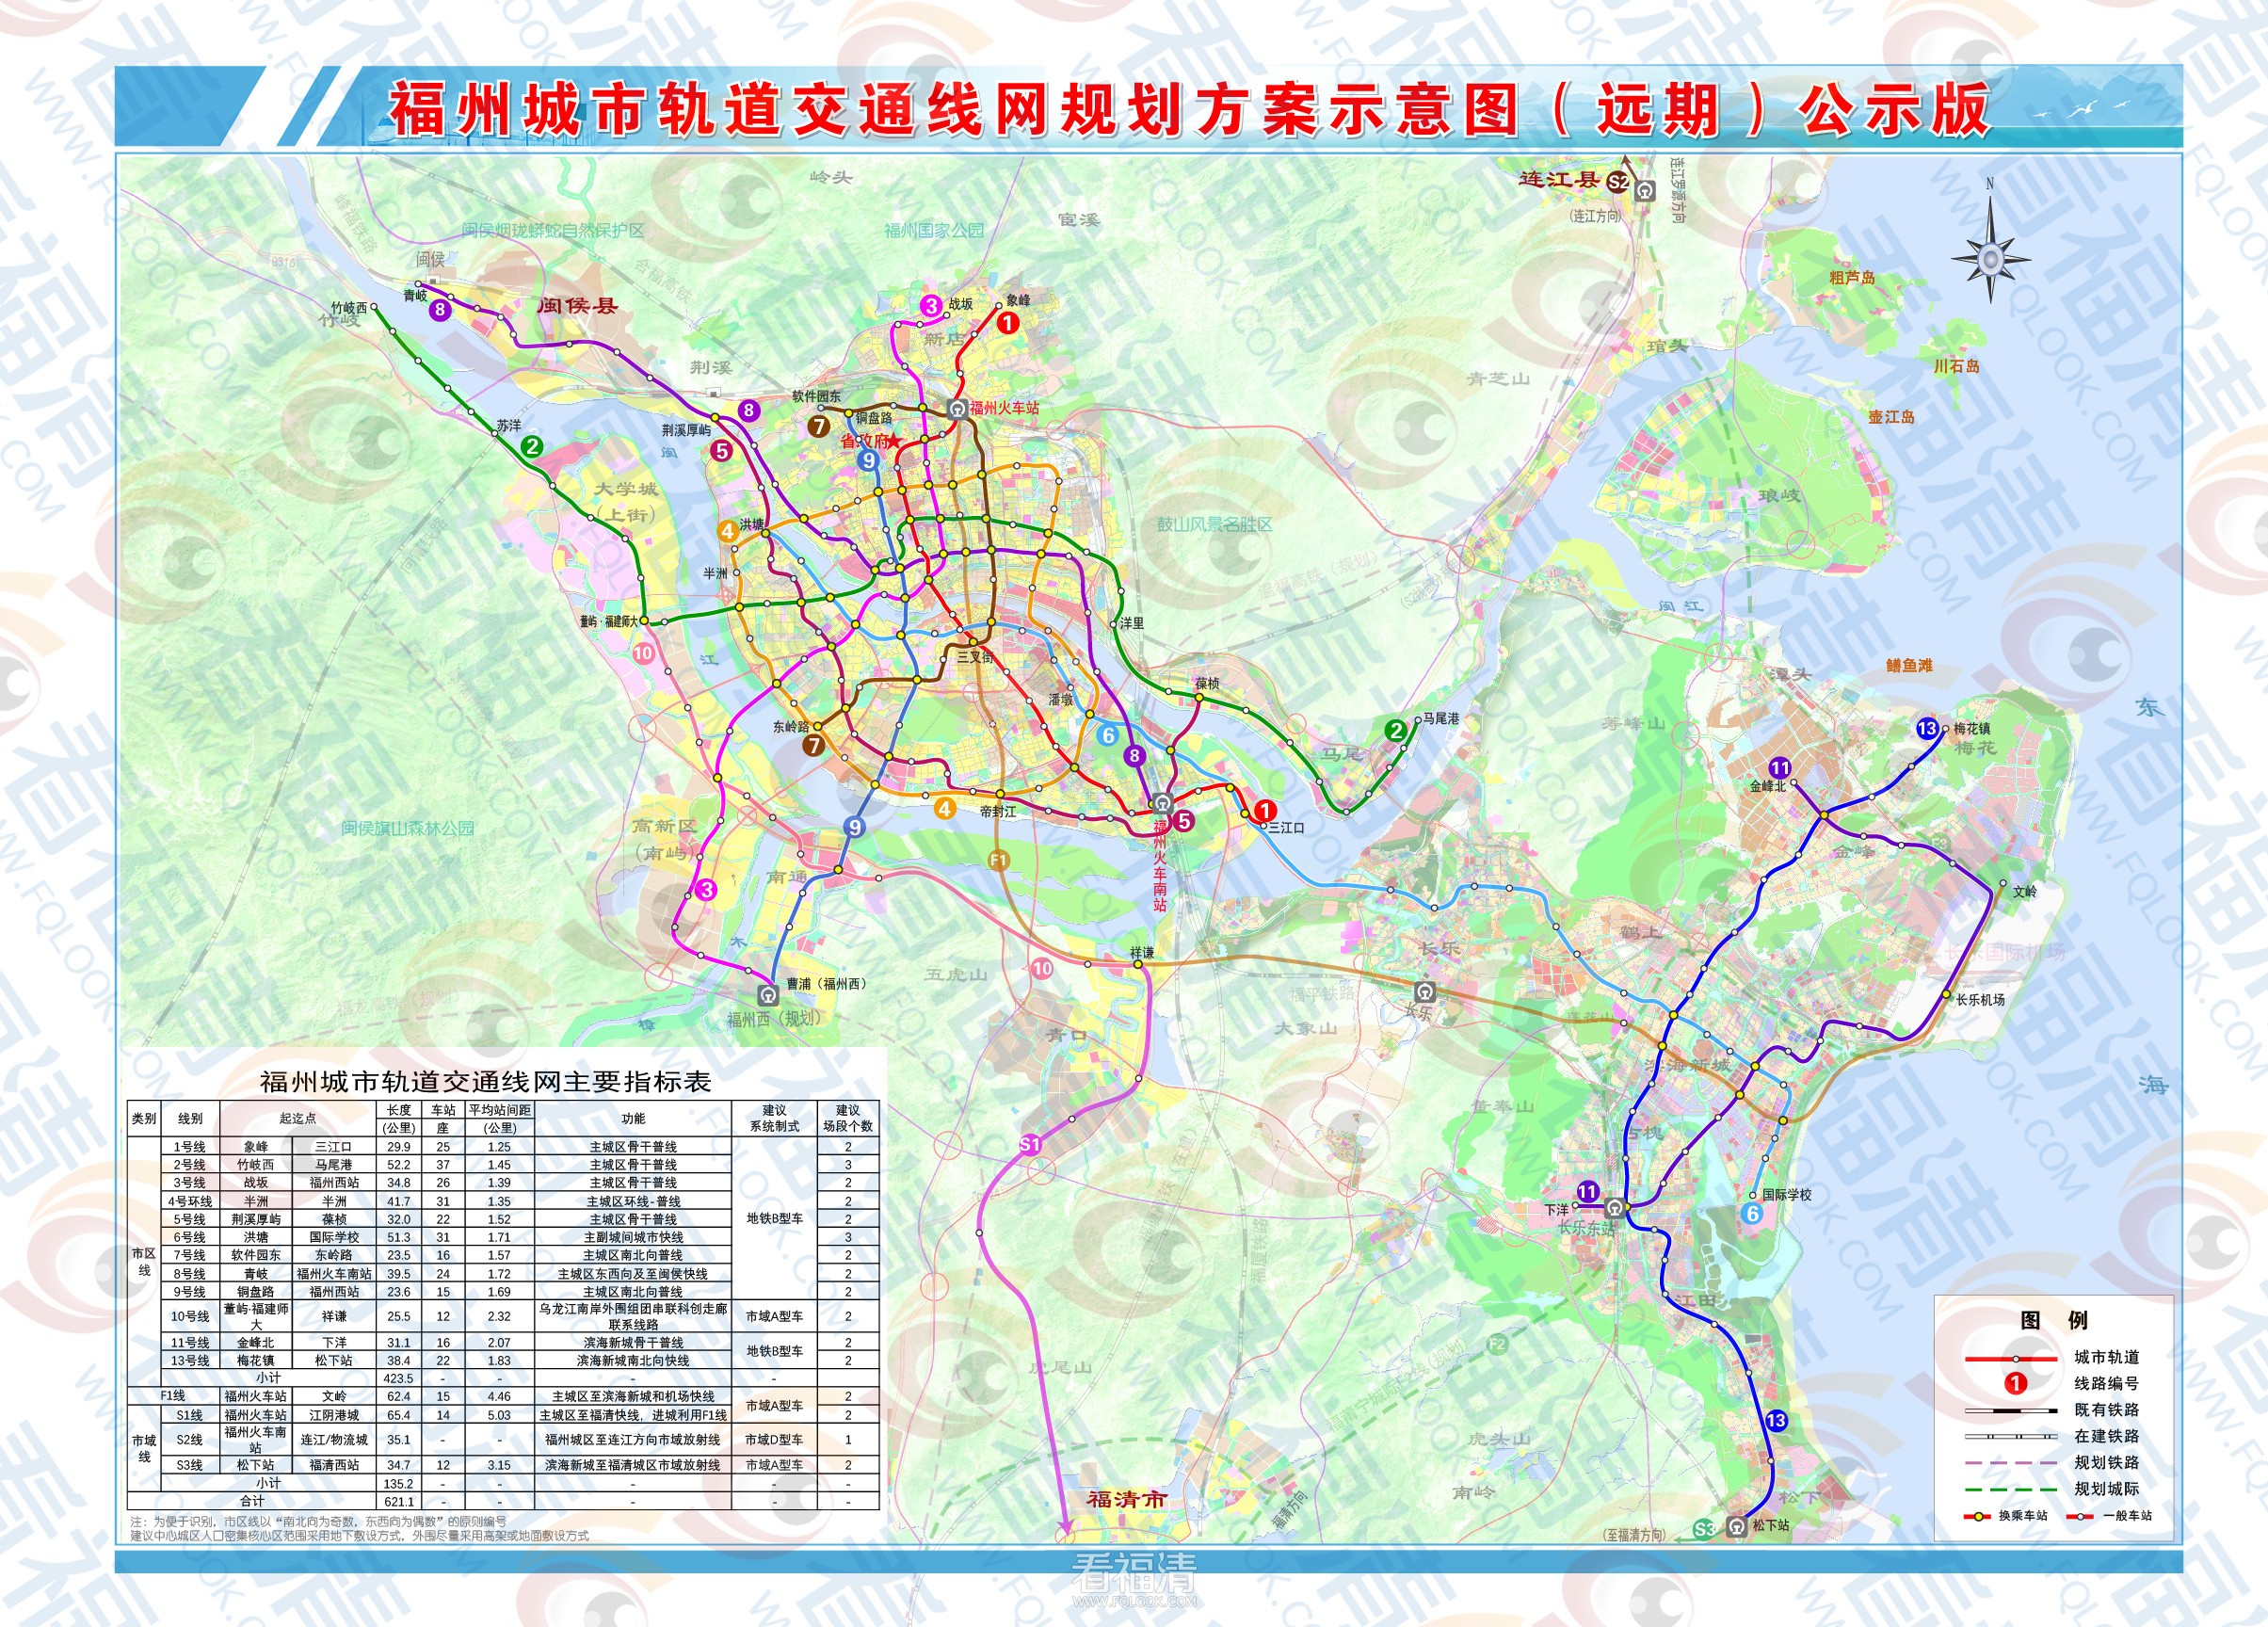 附件1.福州城市轨道交通线网规划方案示意图（远期）公示版.jpg